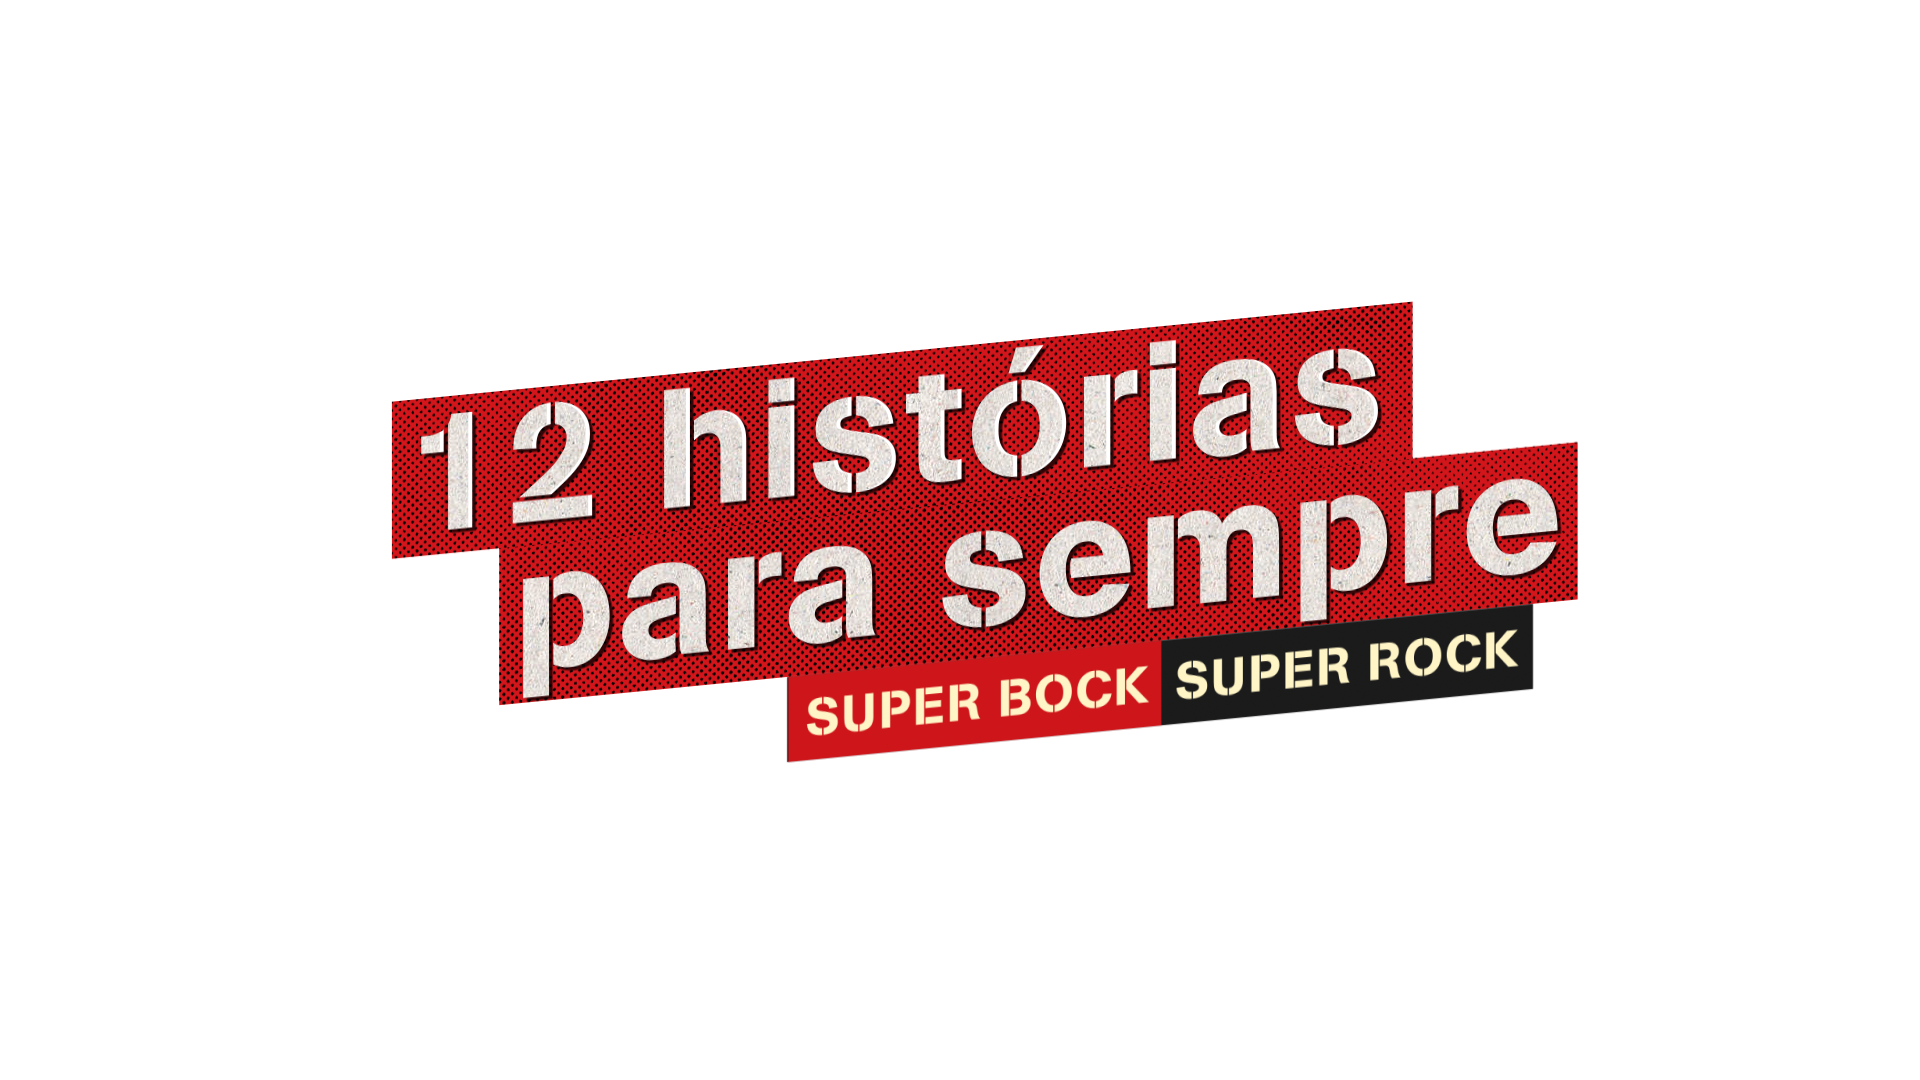 Super Bock Super Rock: 12 histórias para sempre